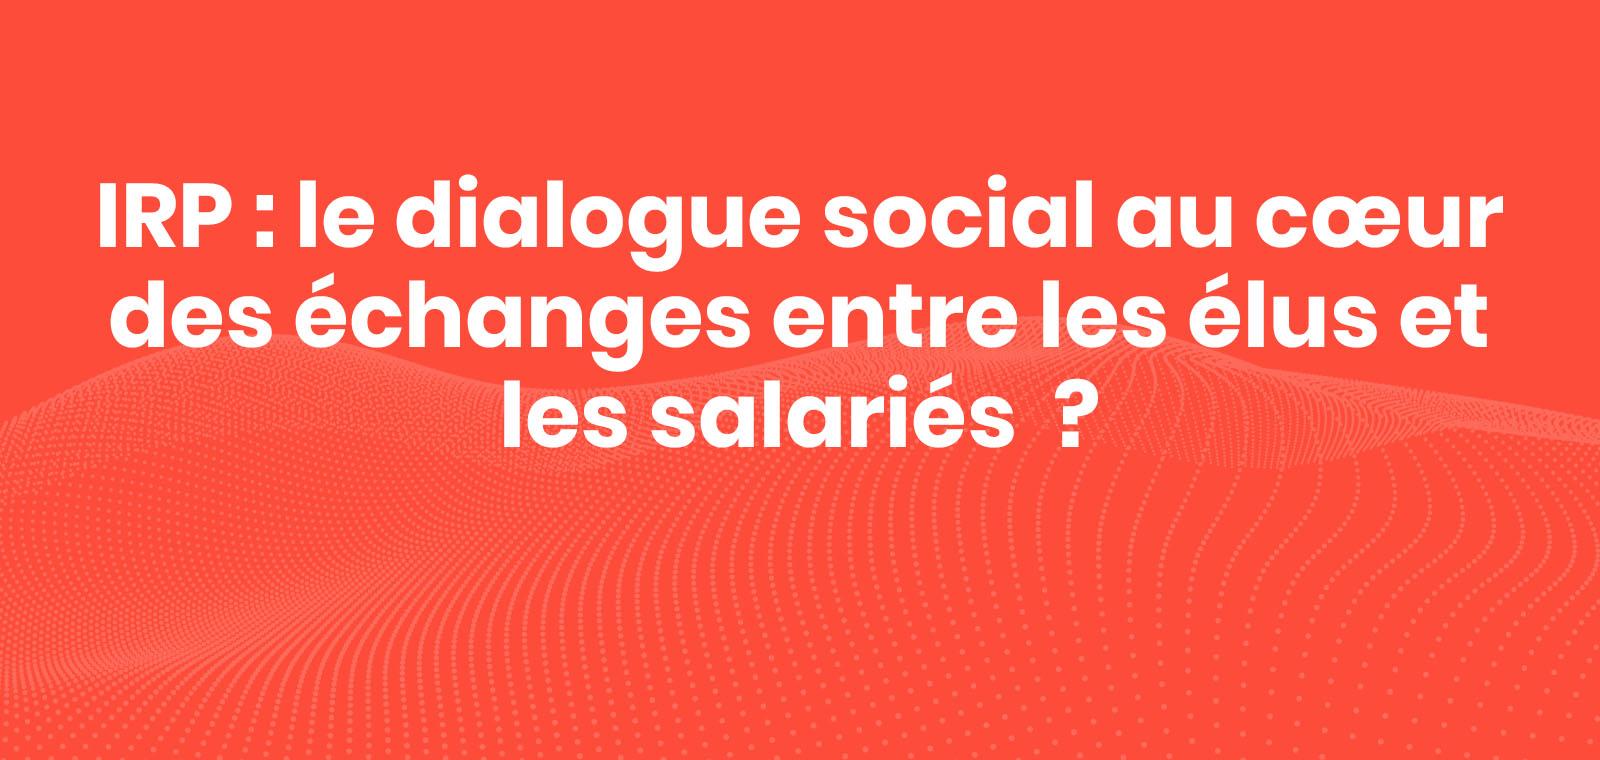 IRP : le dialogue social au cœur des échanges entre les élus et les salariés